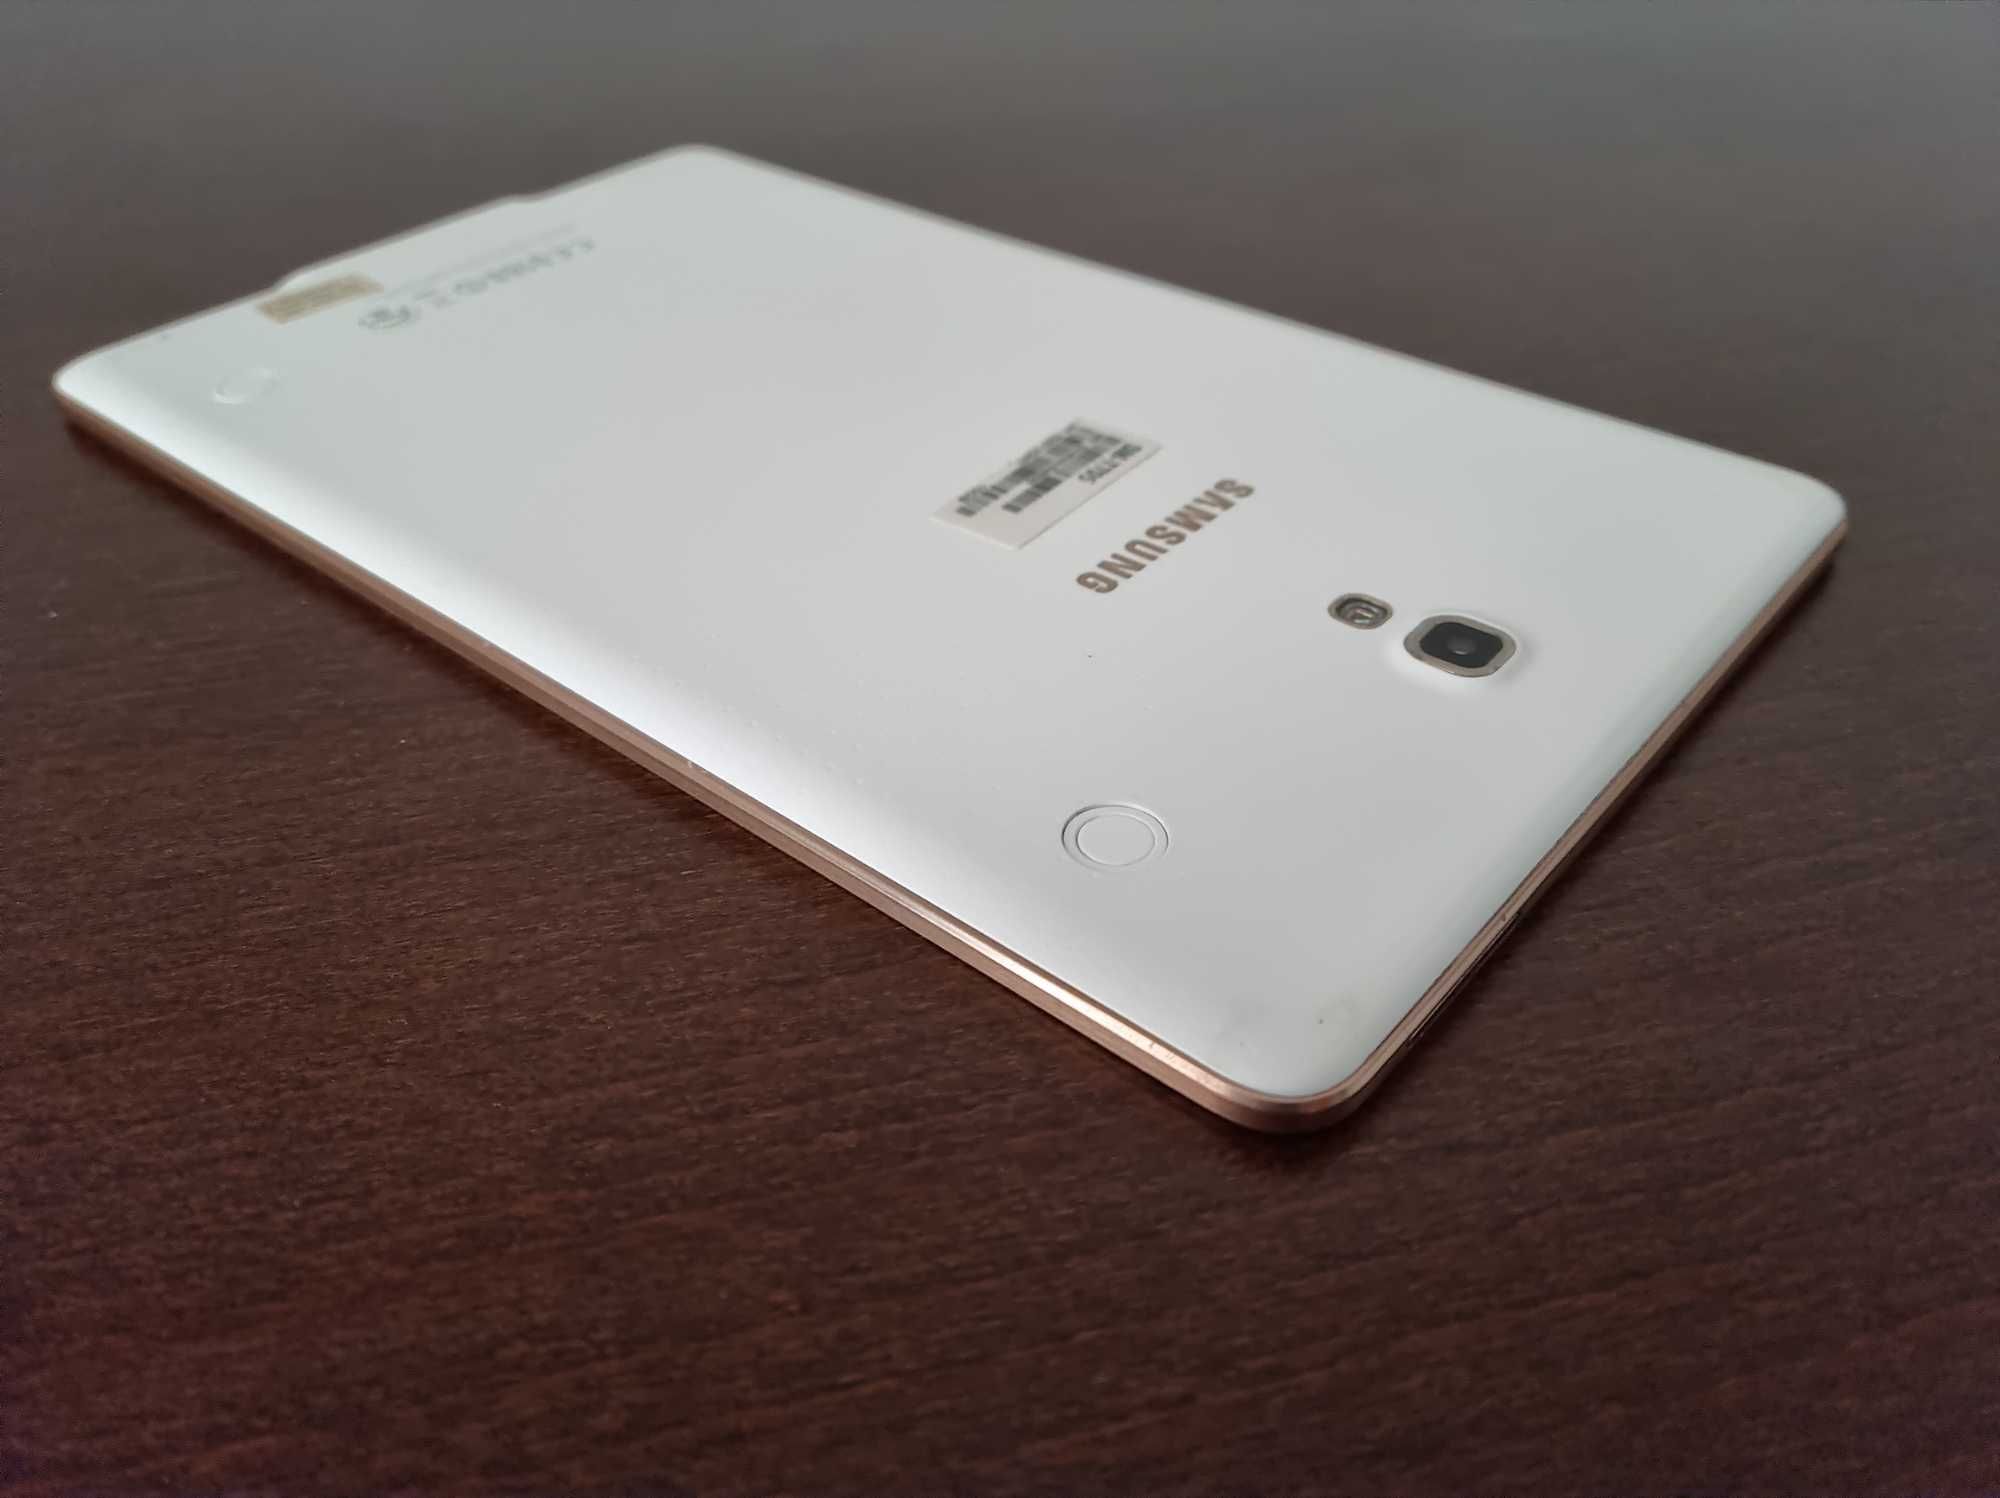 Samsung Galaxy Tab S SM-T705 (acumulator nou) + Case